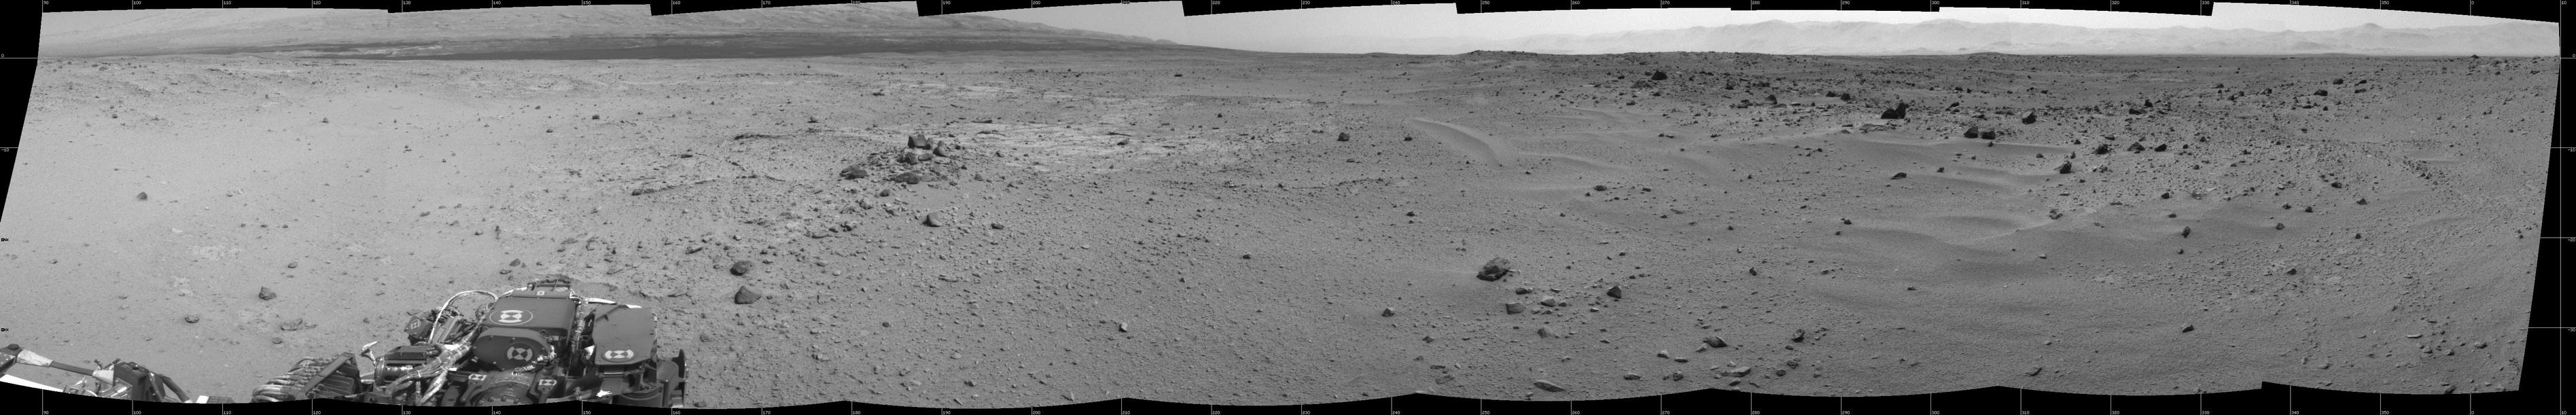 View Ahead After Curiosity's Sol 376 Drive Using Autonomous Navigation